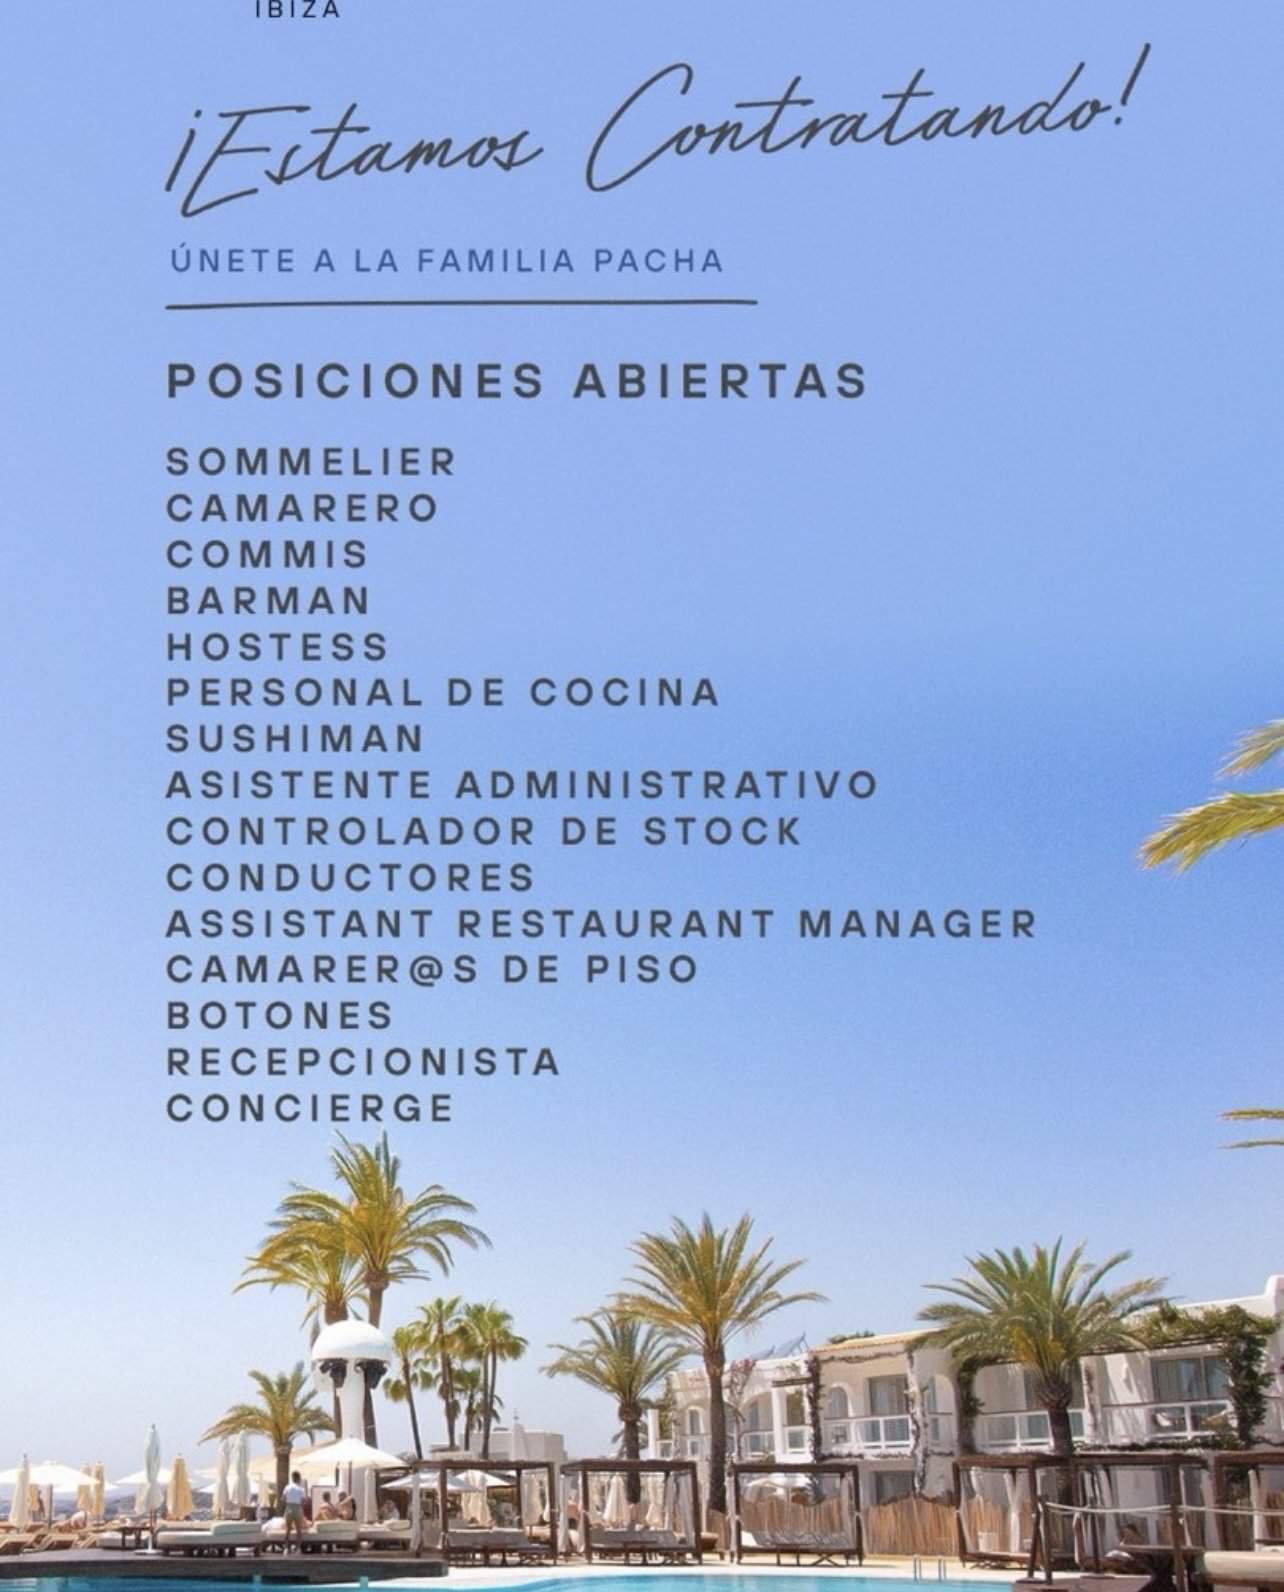 Arbeit auf Ibiza 2024: Destination Pacha Ibiza sucht Personal